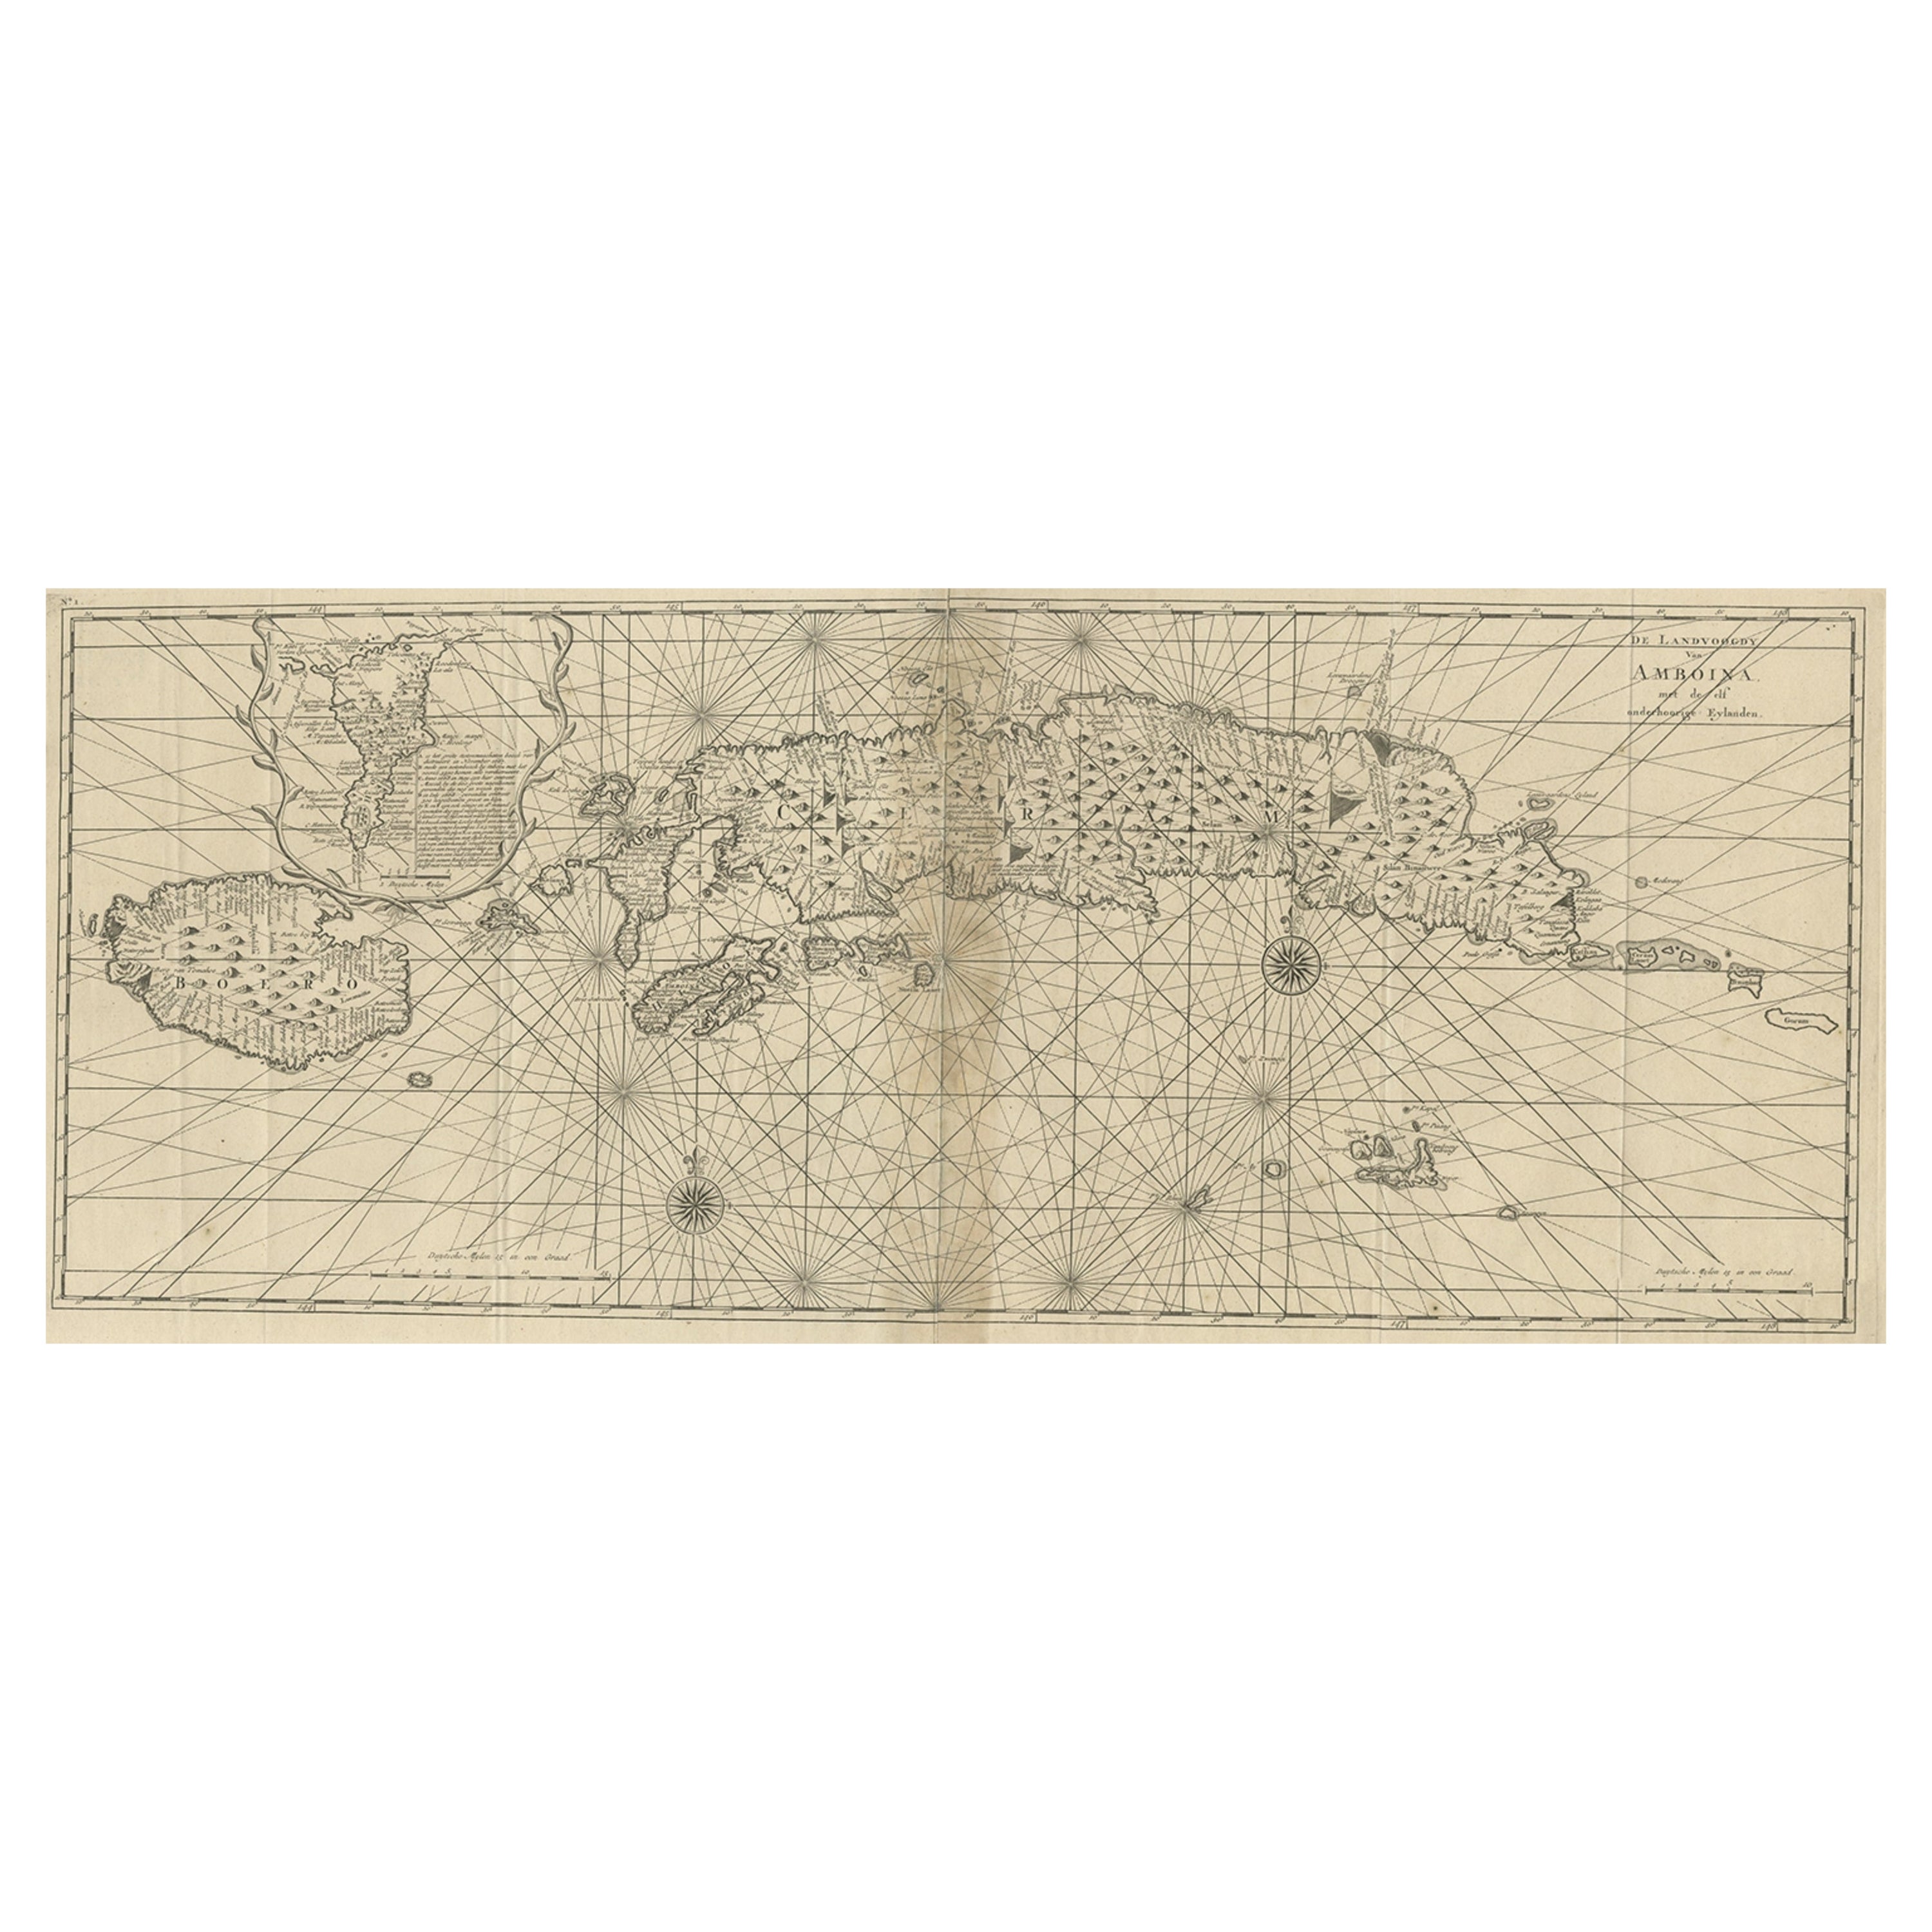 Carte ancienne des Moluccas ou des îles célèbres Spice Islands d'Indonésie, 1724